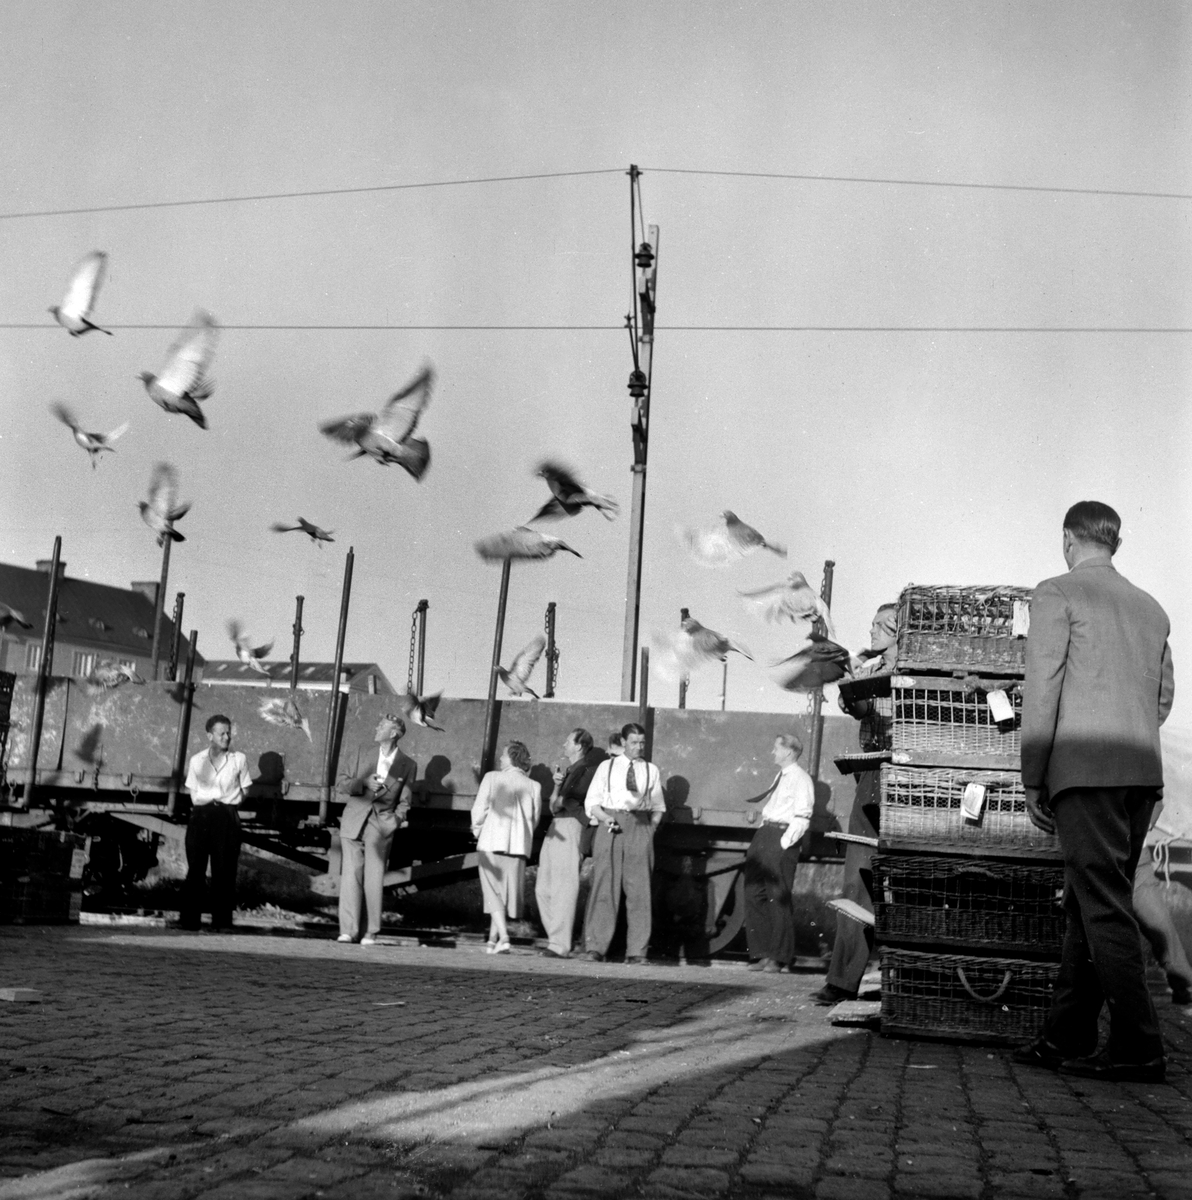 "Olympiaduvor" är allt fotografen noterade kring denna bild från 1953. Vi som långt senare i tid är satta att tolka har inget klart svar. Platsen där det hände var under alla omständigheter fraktgodscentralen invid Linköpings hamn.